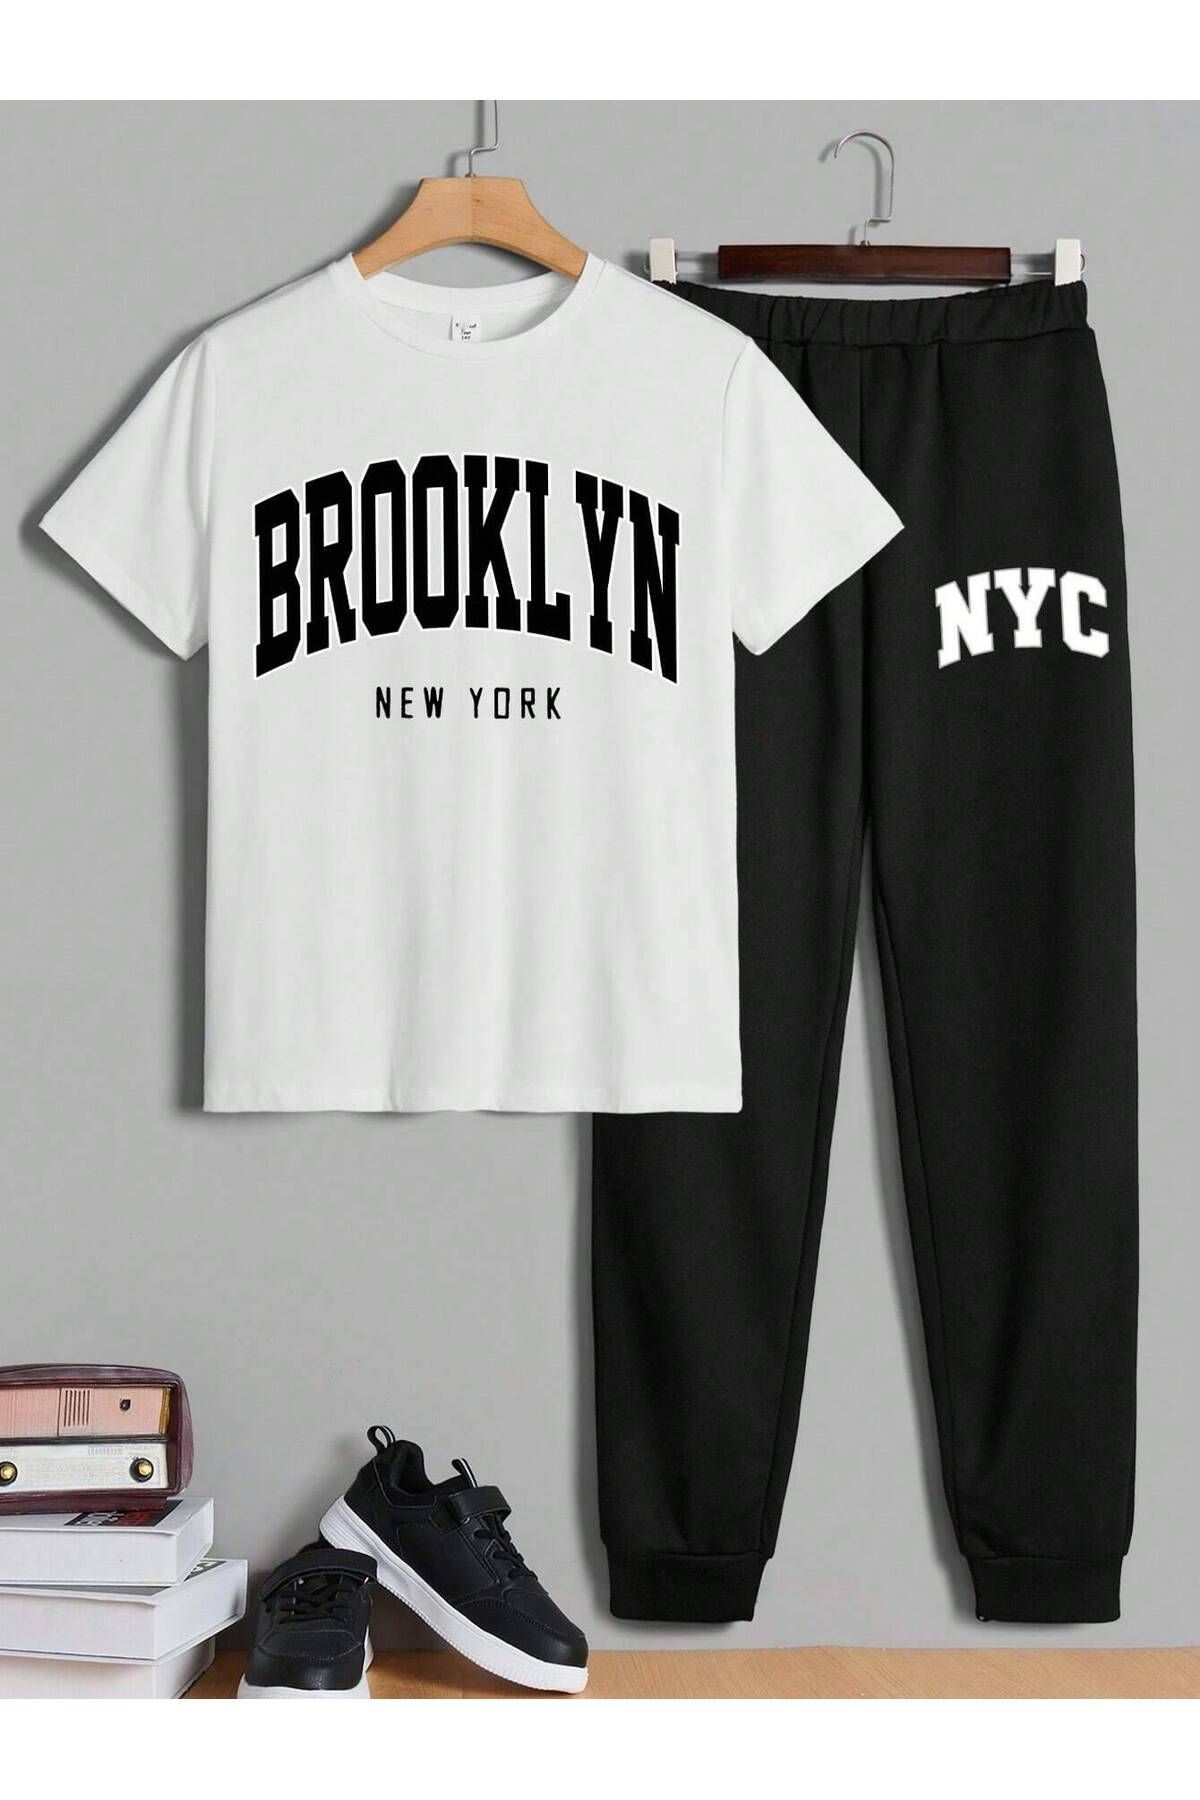 LePold Üst Beyaz Tişört Alt Siyah Brooklyn NYC Baskılı Kız/erkek Oversize Tişört& Eşofman Takım